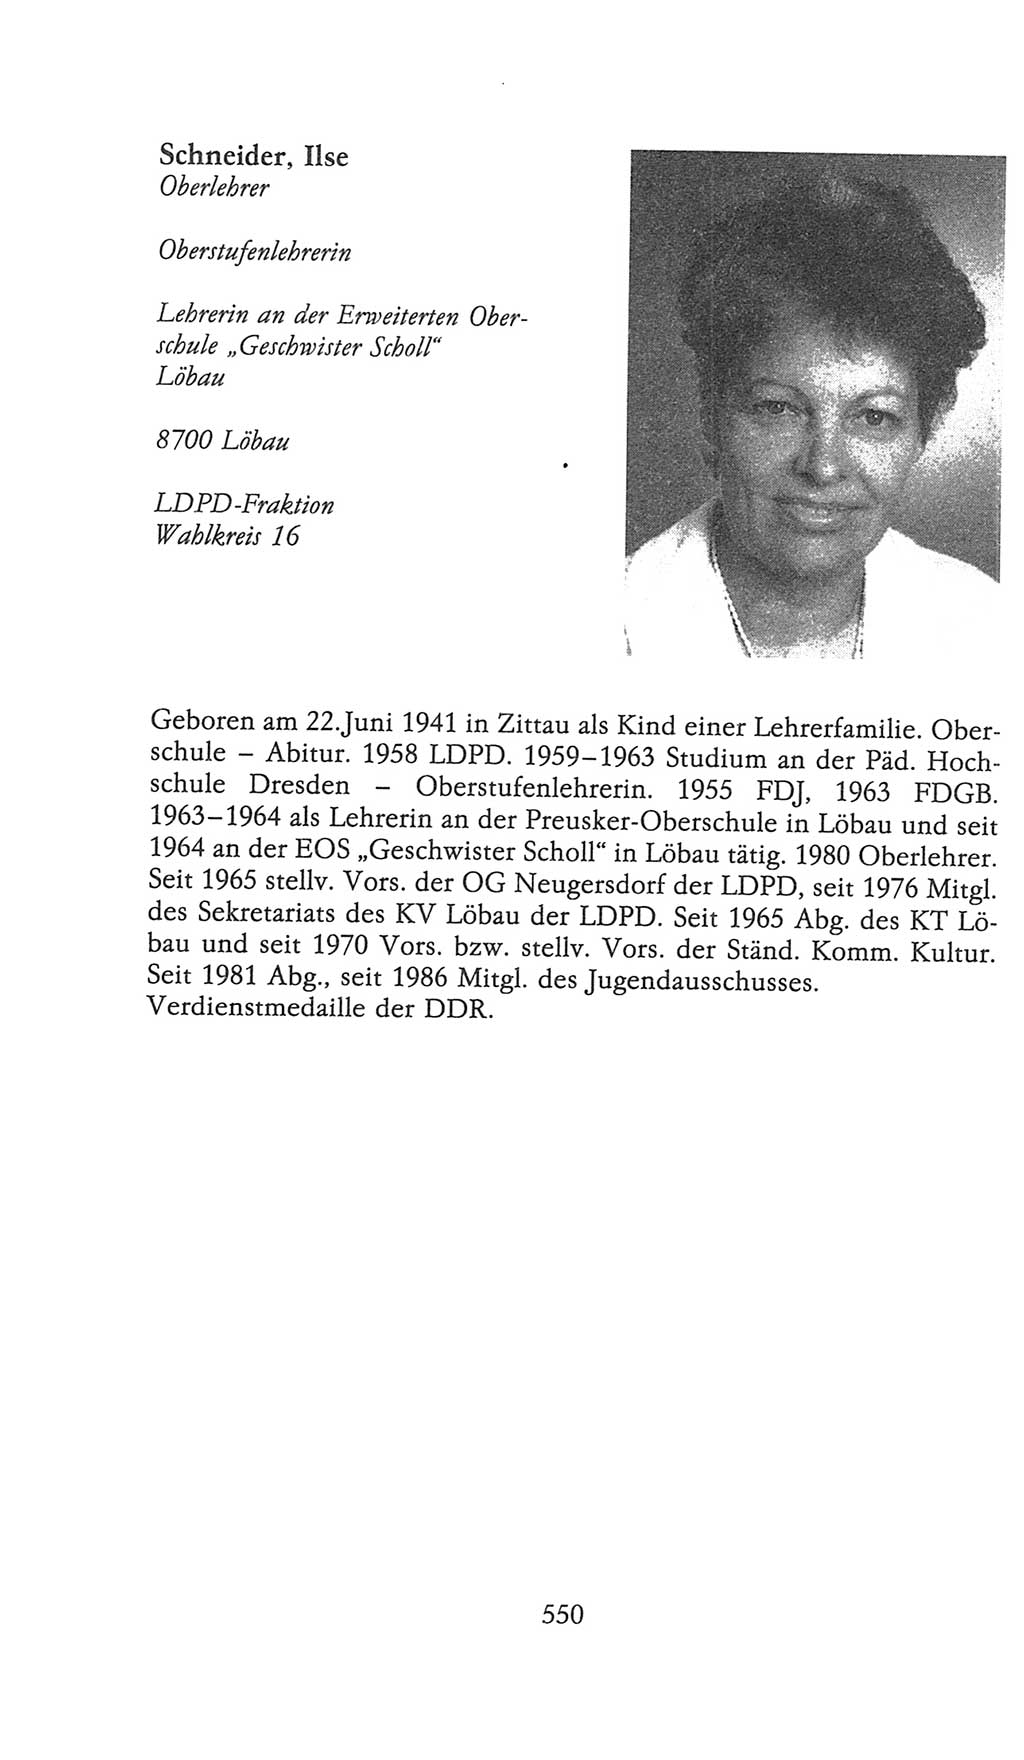 Volkskammer (VK) der Deutschen Demokratischen Republik (DDR), 9. Wahlperiode 1986-1990, Seite 550 (VK. DDR 9. WP. 1986-1990, S. 550)